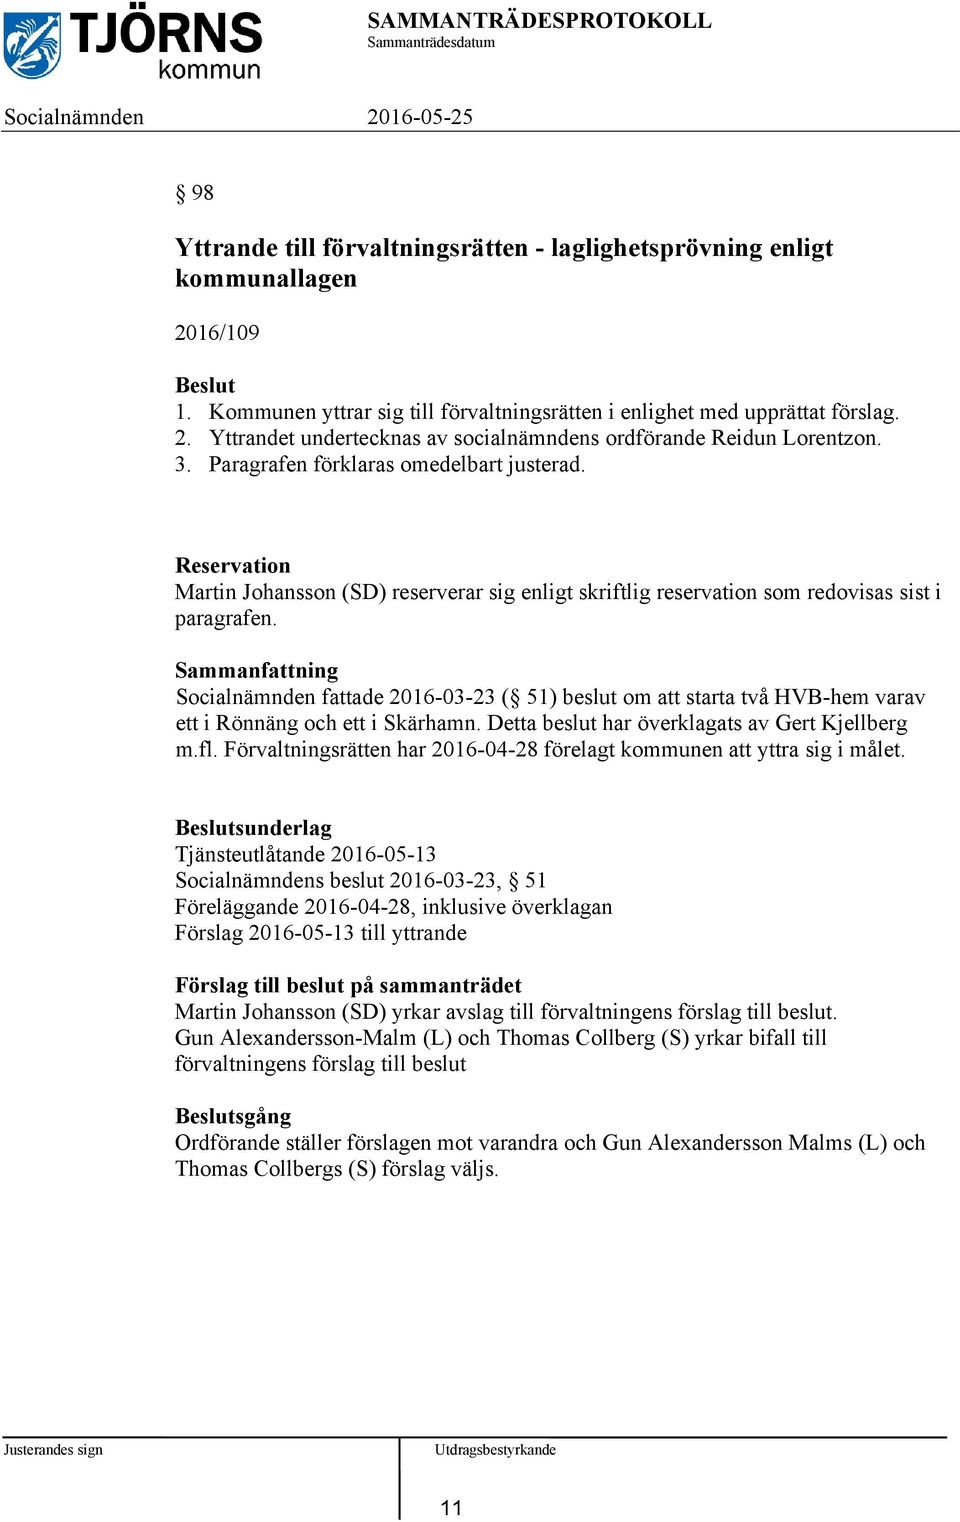 Socialnämnden fattade 2016-03-23 ( 51) beslut om att starta två HVB-hem varav ett i Rönnäng och ett i Skärhamn. Detta beslut har överklagats av Gert Kjellberg m.fl.